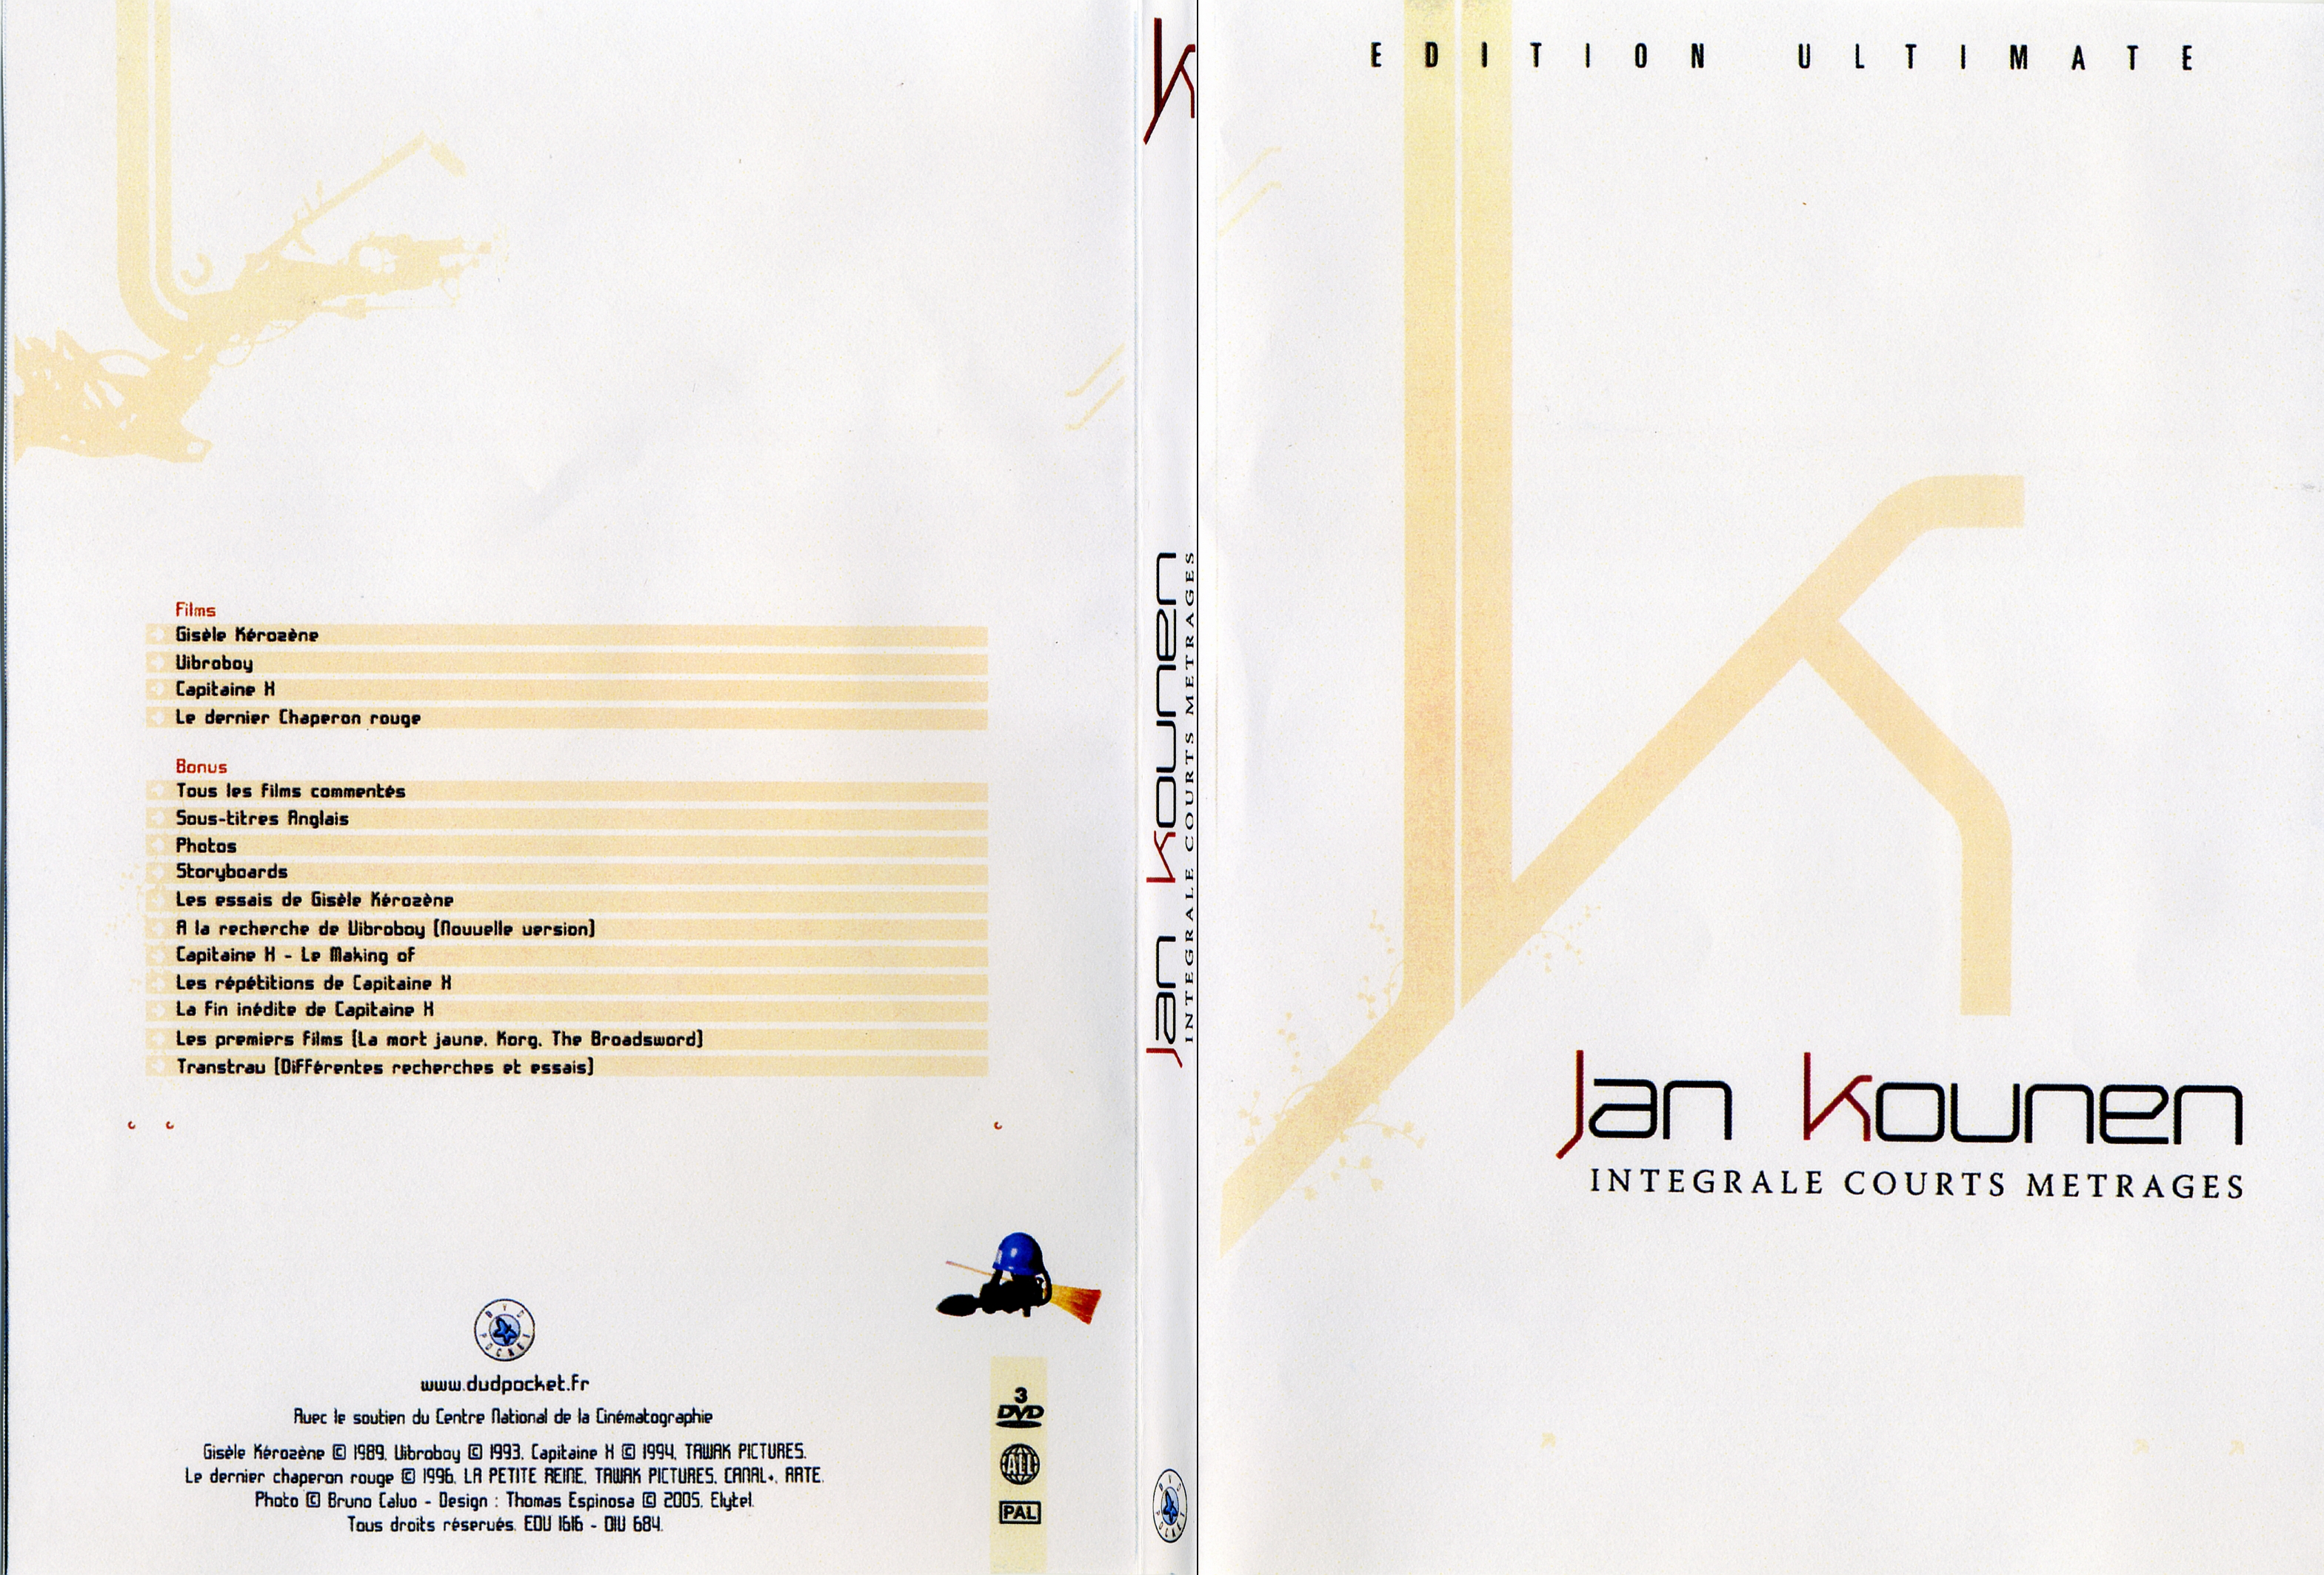 Jaquette DVD Jan Kounen integrale courts metrages - SLIM